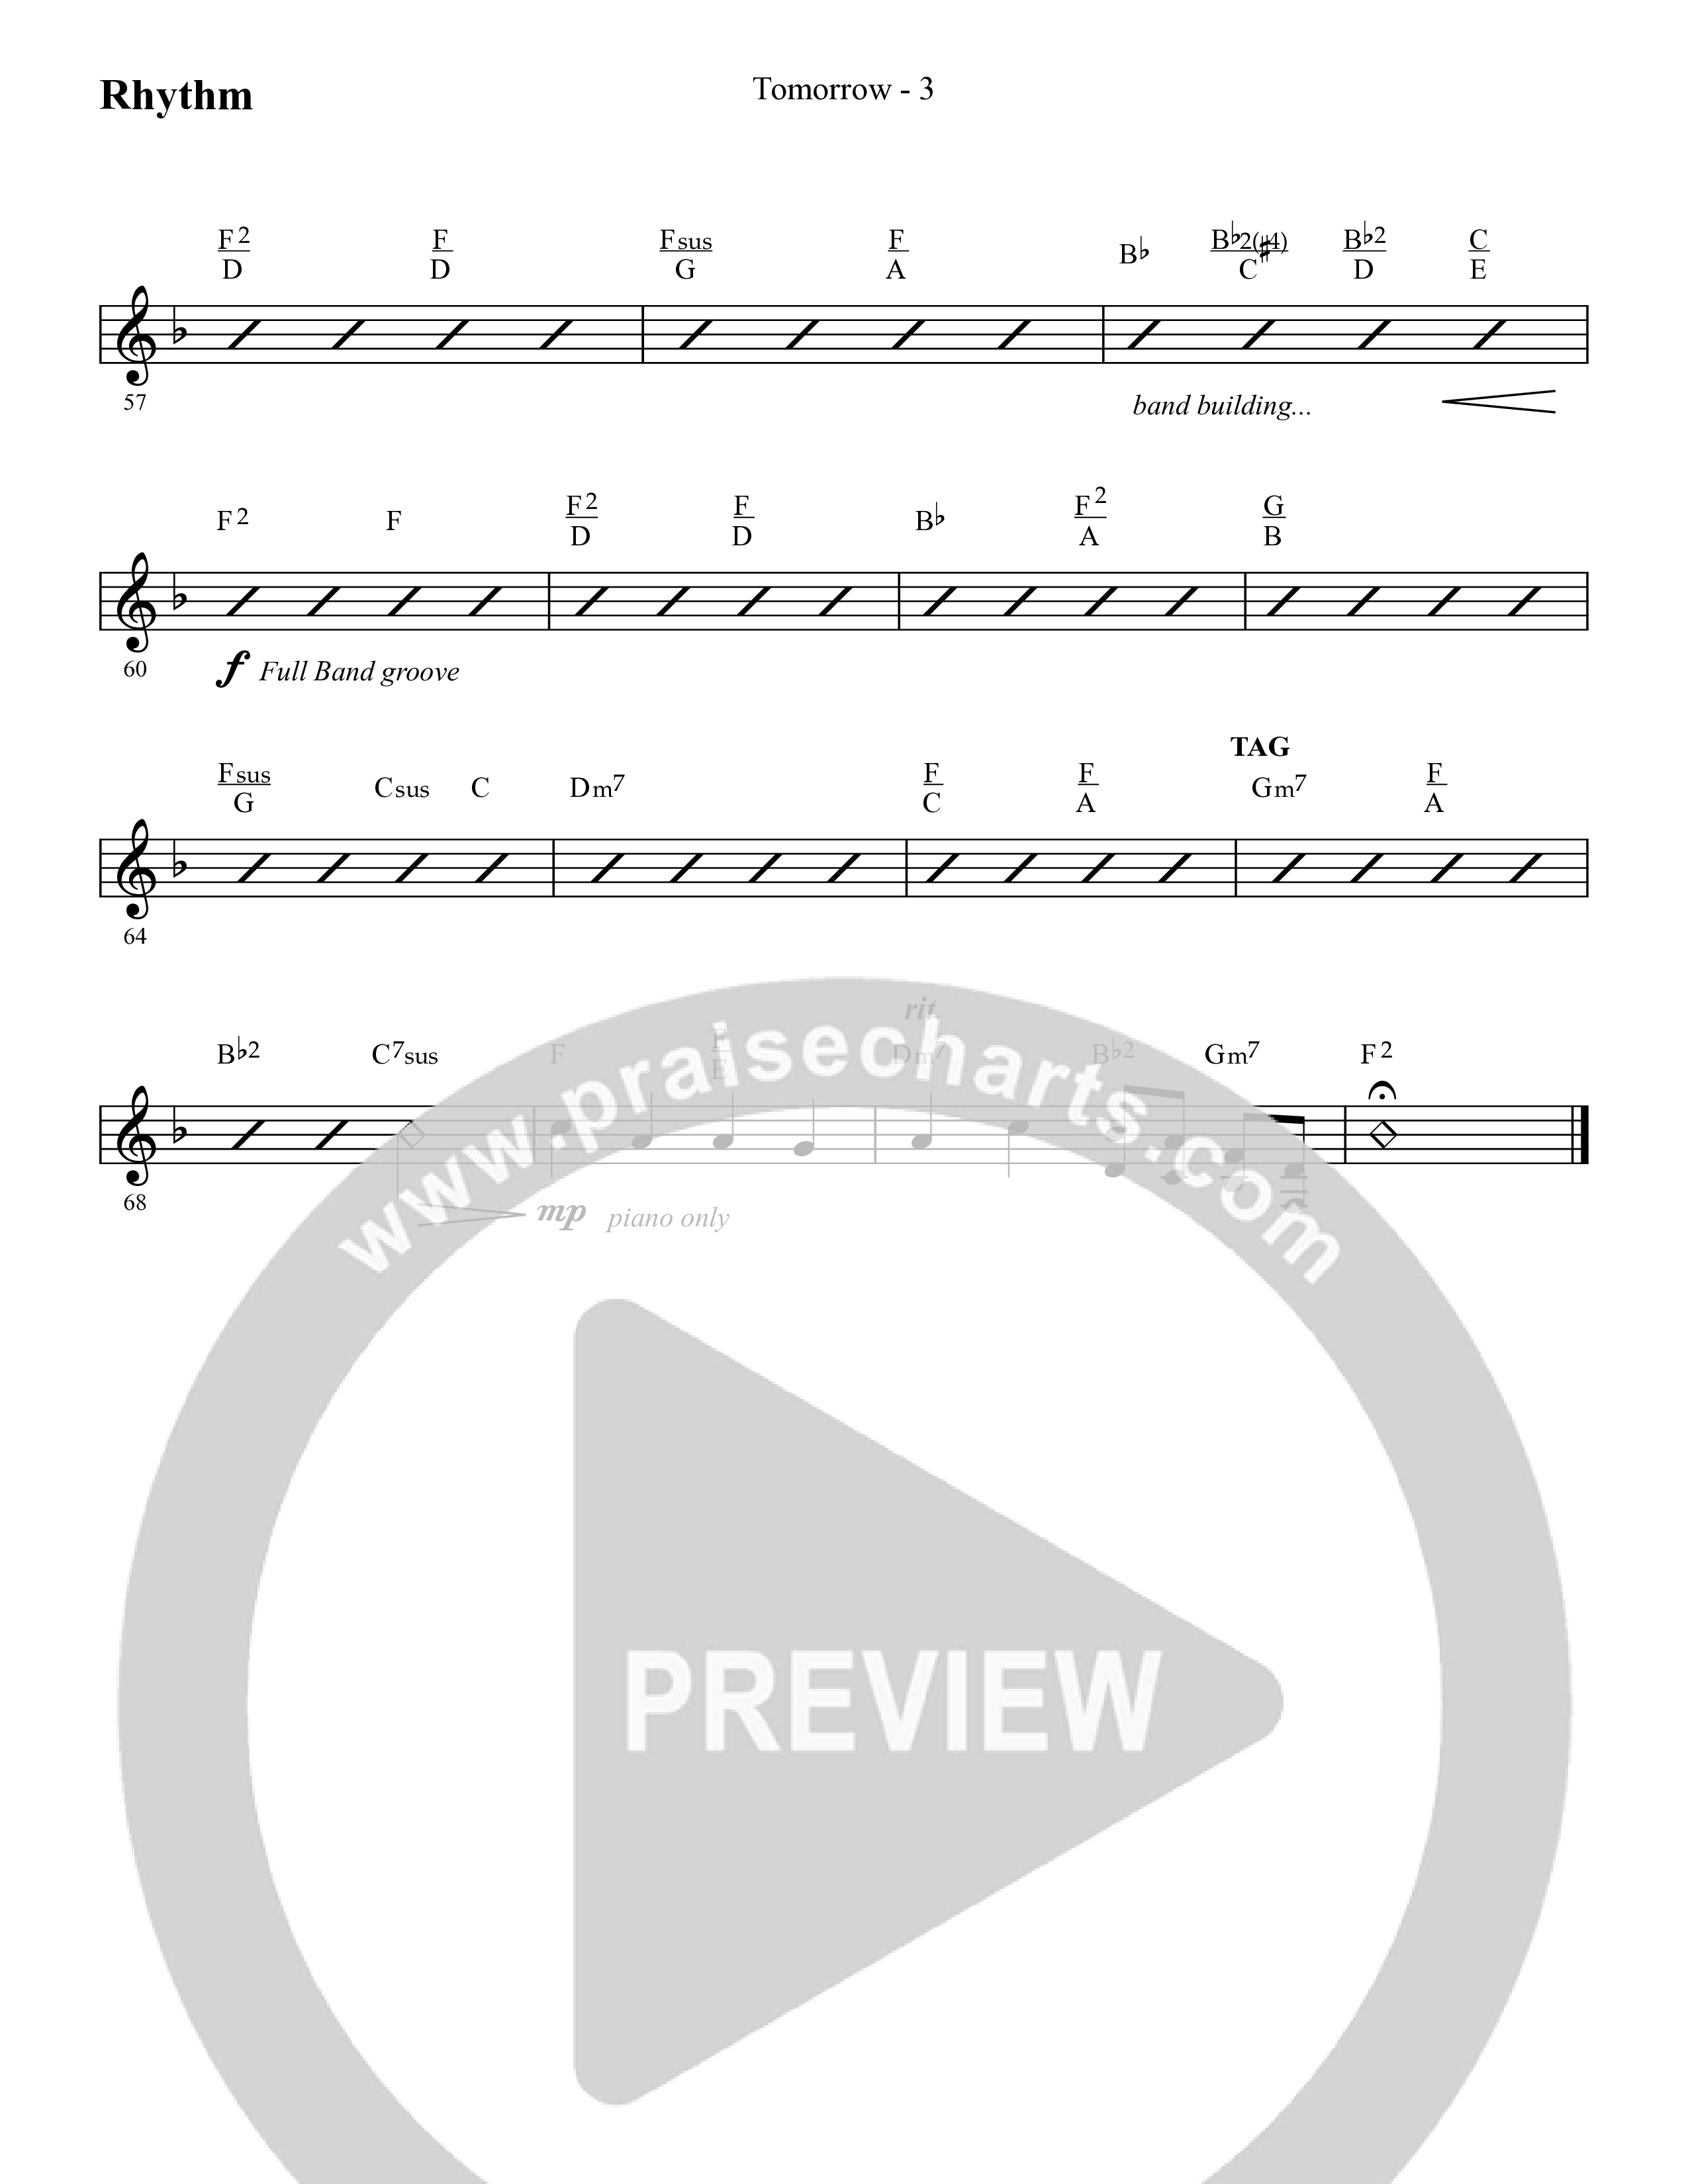 Tomorrow (Choral Anthem SATB) Lead Melody & Rhythm (Lifeway Choral / Arr. Cliff Duren)